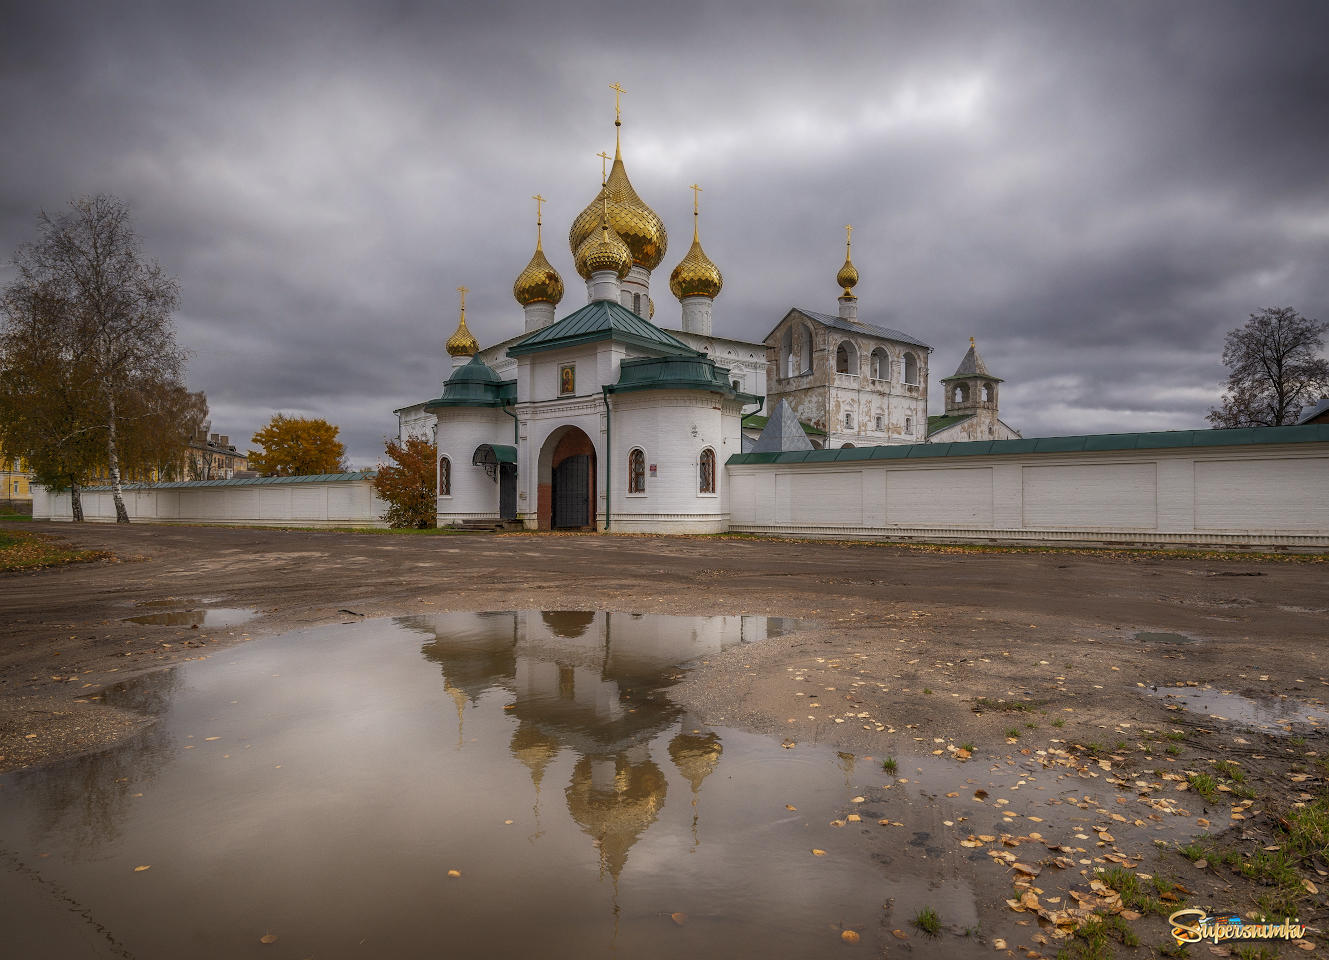 Купола в России кроют чистым золотом, чтобы чаще Господь замечал...